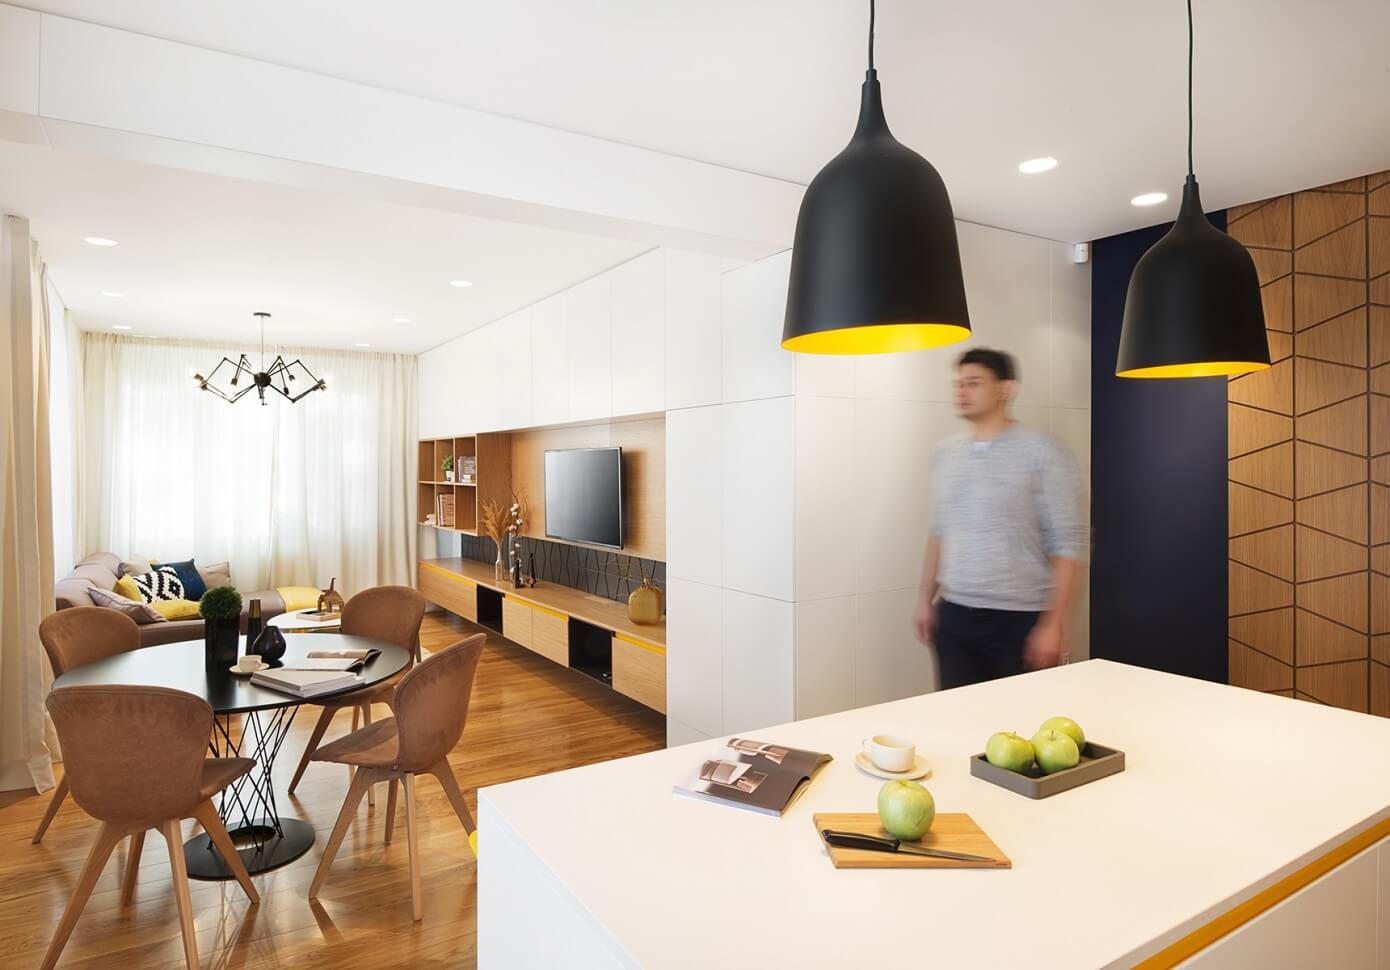 Apartment in Lozenetz by Fimera Design Studio